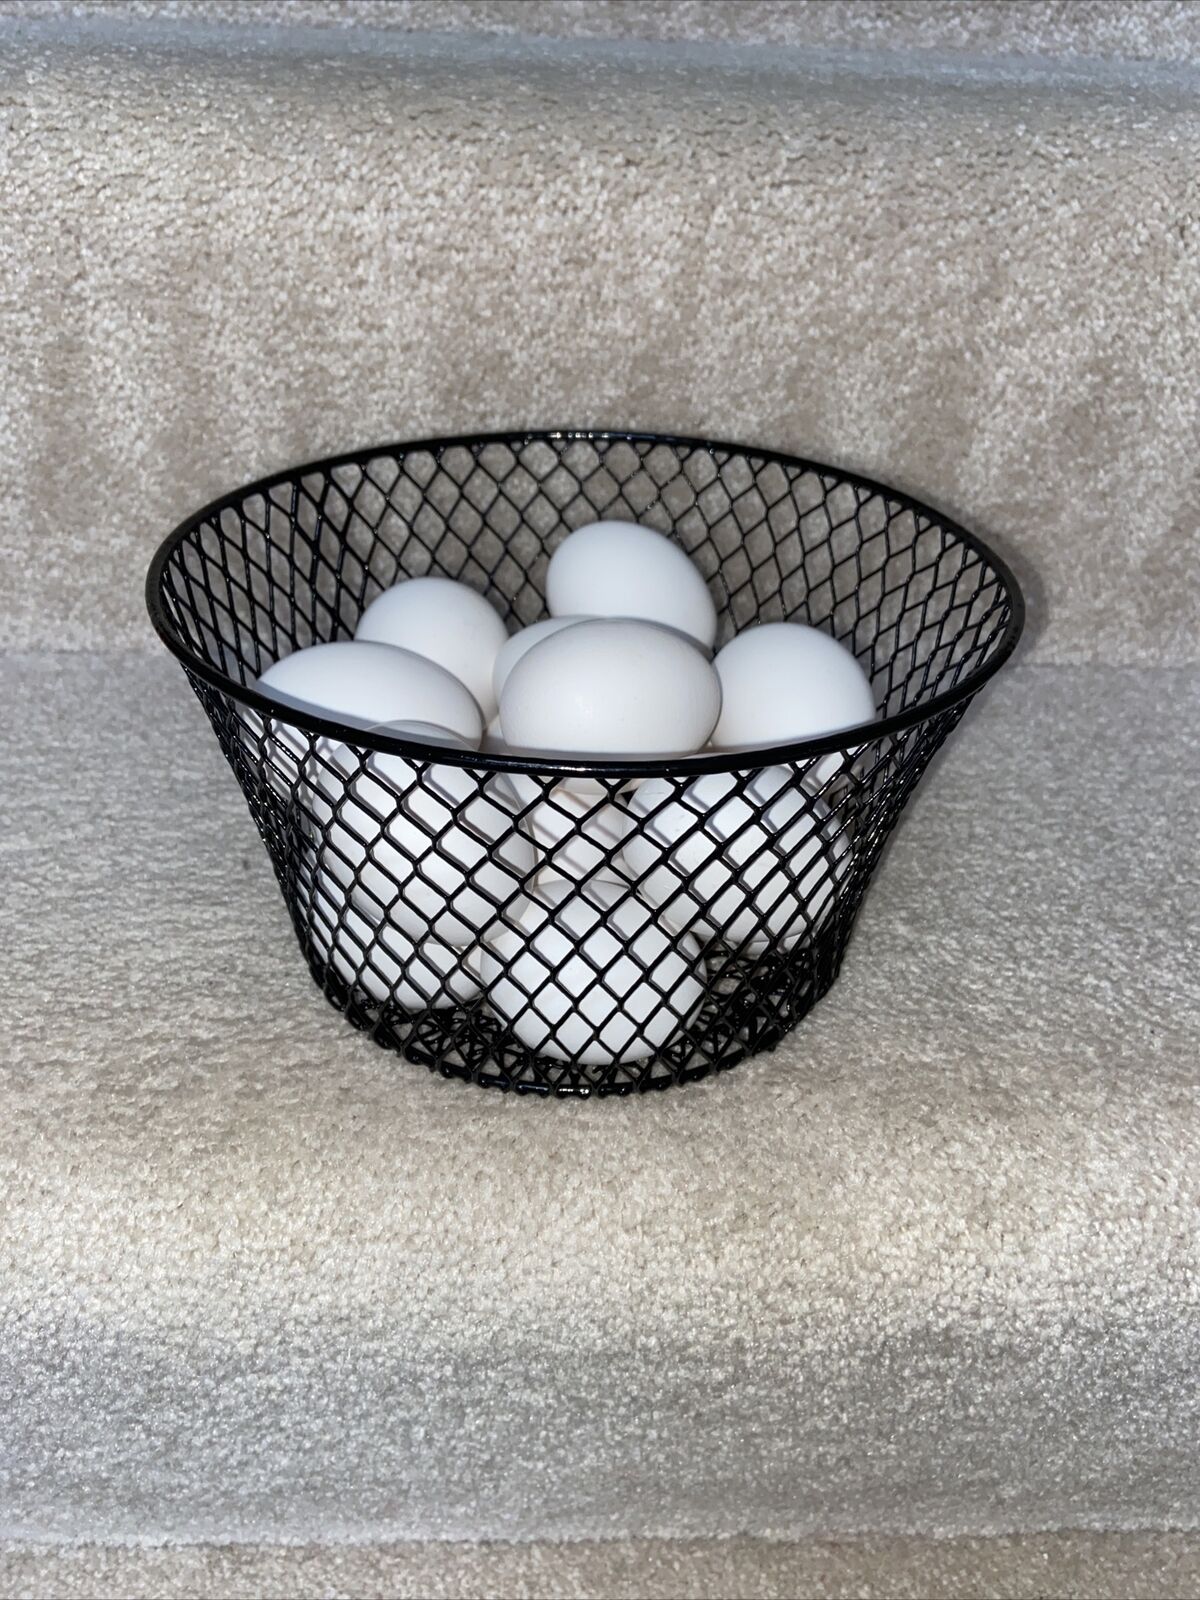 Wire Egg Gathering Basket-no Handle-Light Weight Sturdy Versatile Round-Black-N